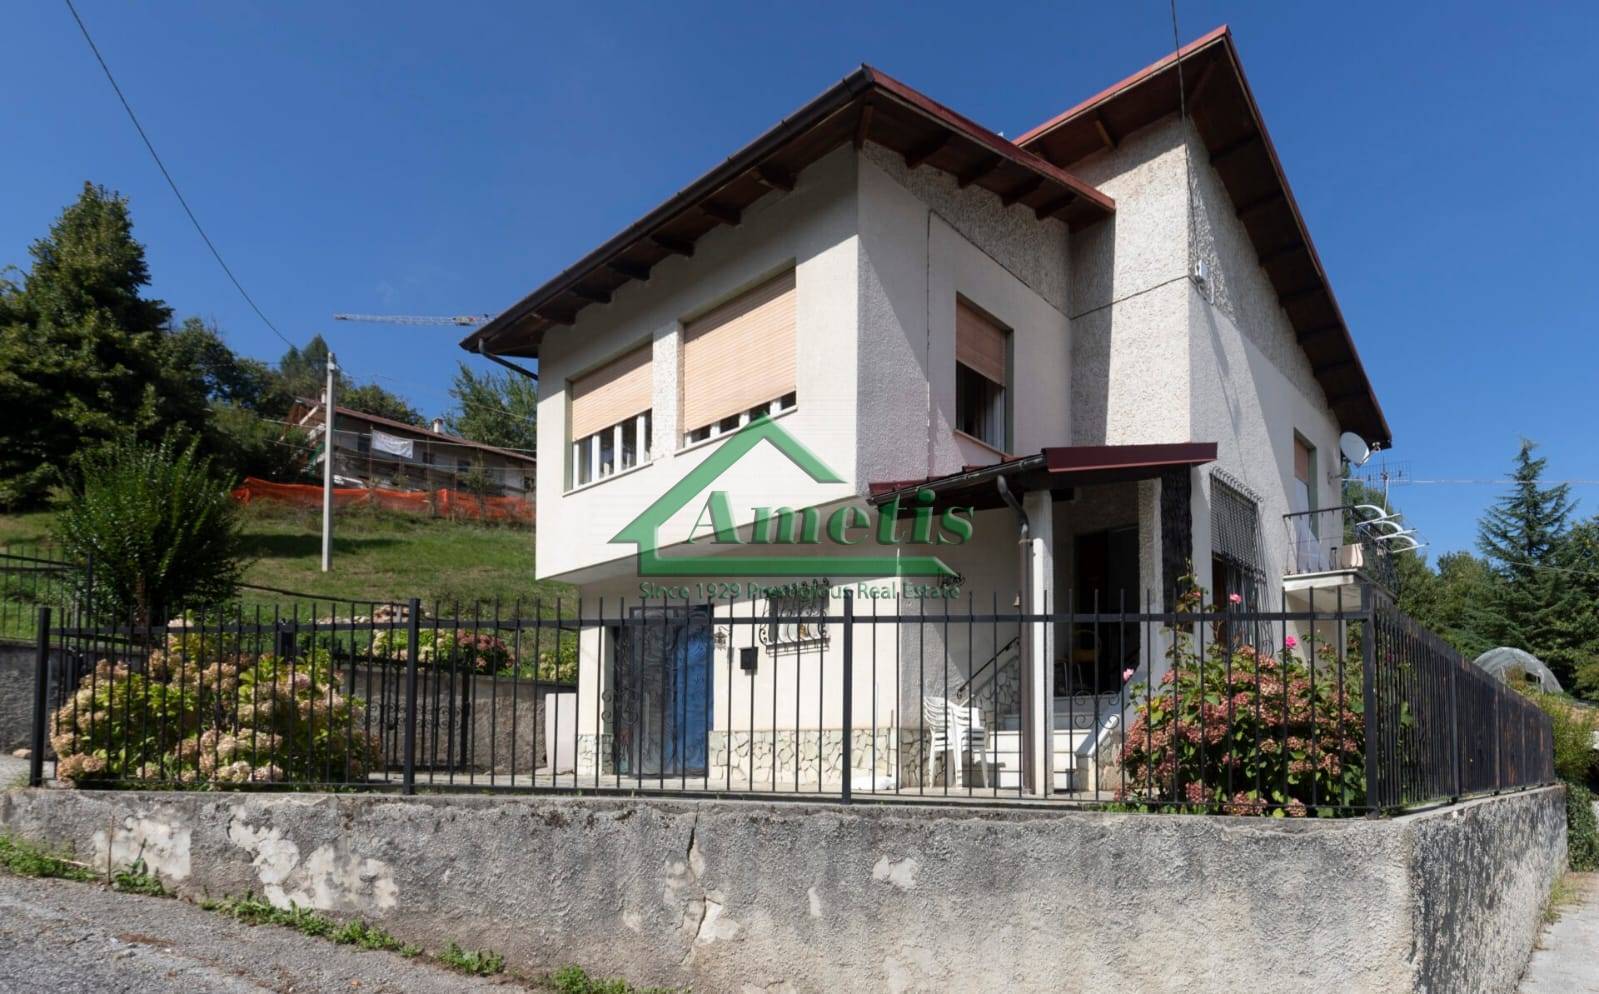 Villa in vendita a Roccaforte Mondovì, 5 locali, zona sia, prezzo € 77.000 | PortaleAgenzieImmobiliari.it